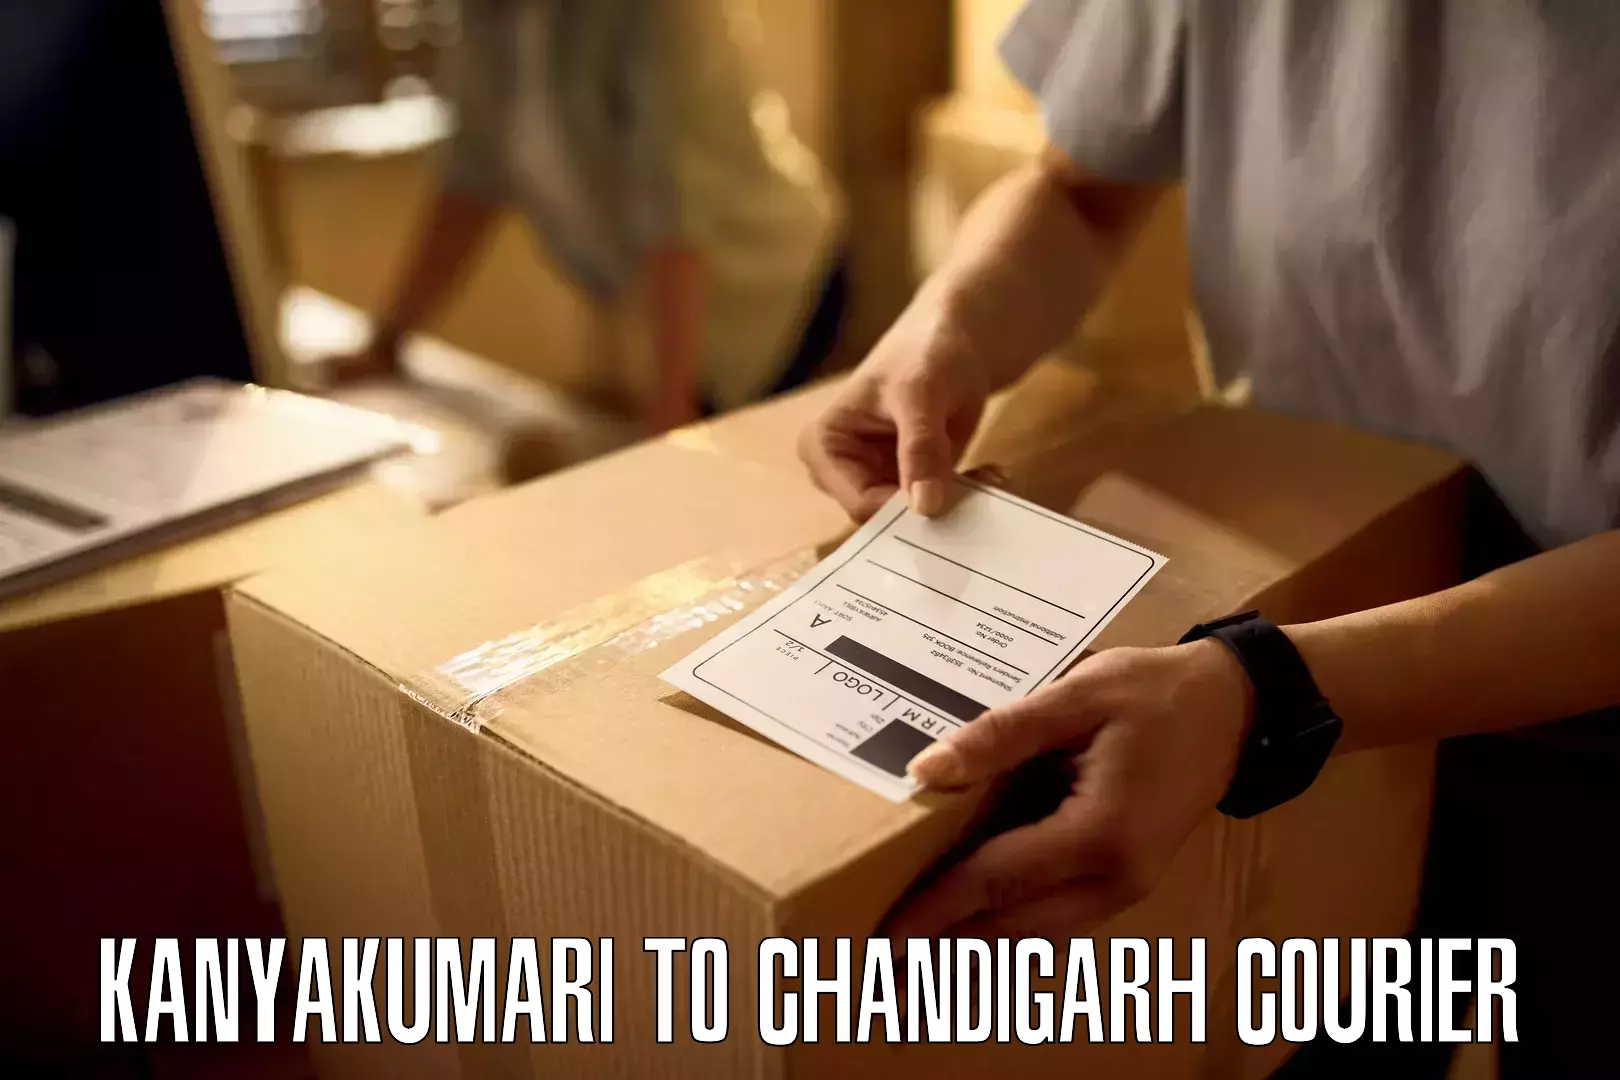 High-speed delivery Kanyakumari to Chandigarh